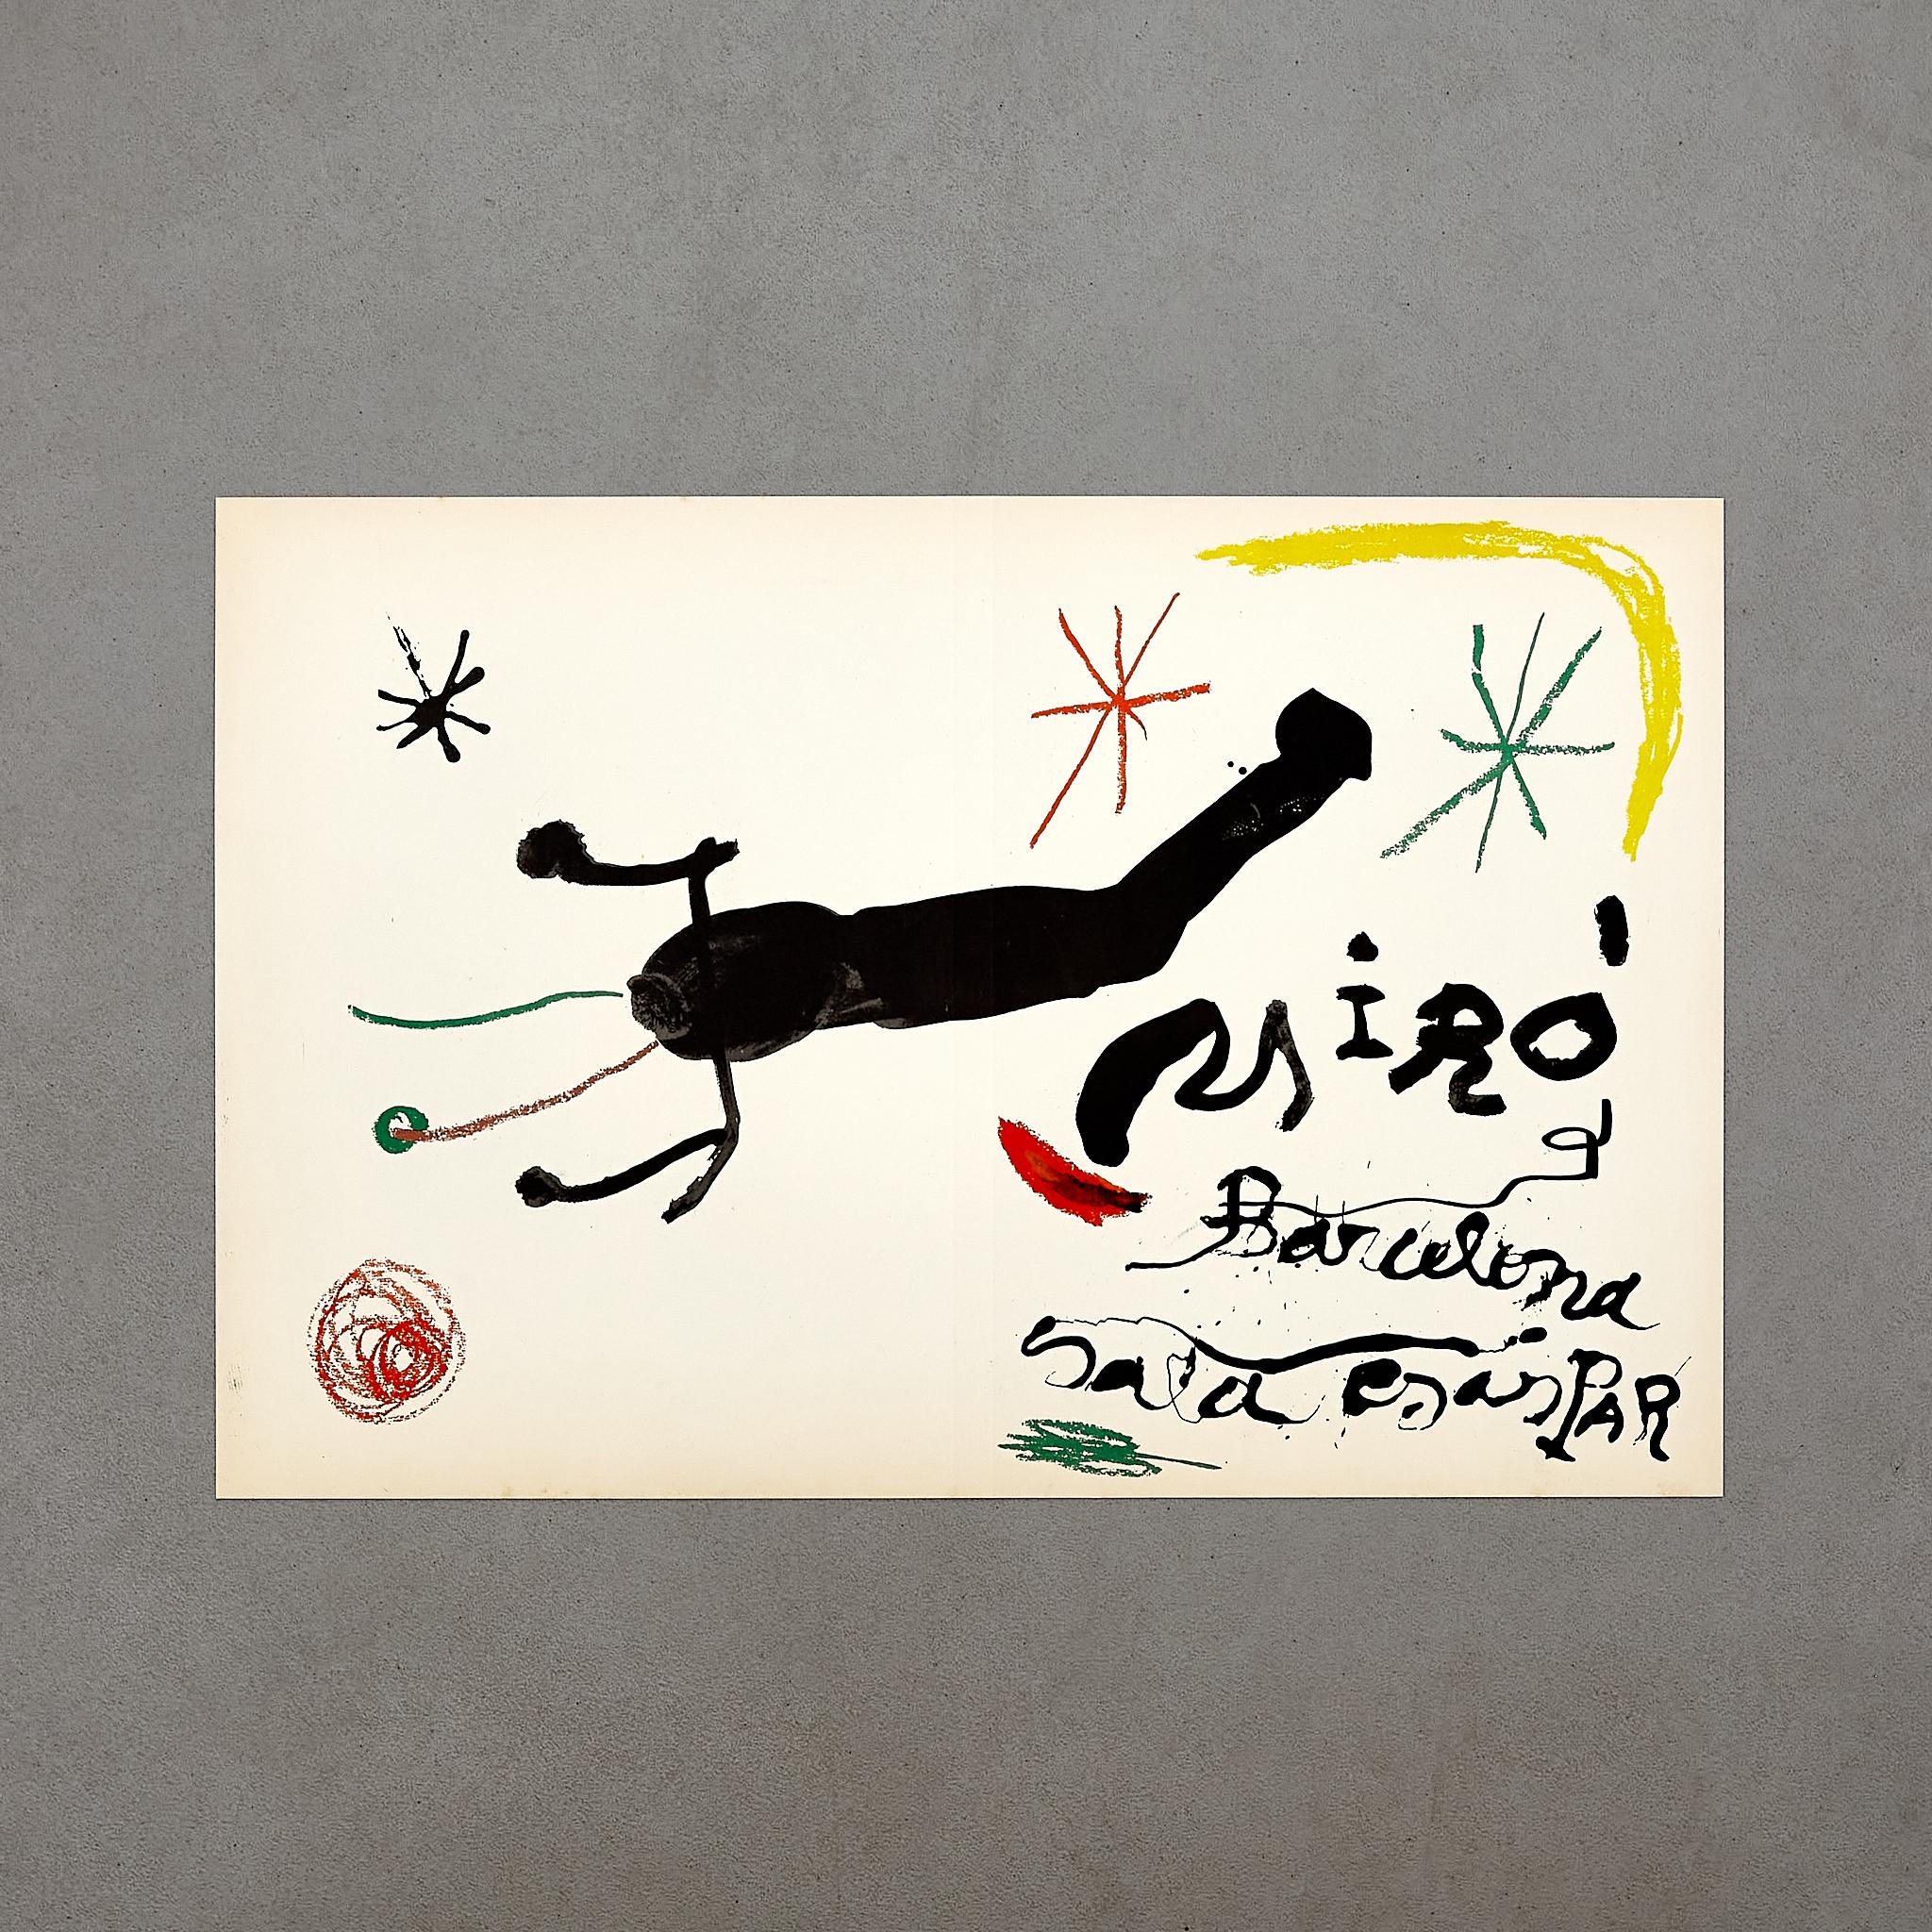 Découvrez le monde captivant de l'art de Joan Miró à travers une pièce exceptionnelle : une lithographie en couleur de 1964, qui figure en bonne place sur la couverture de l'